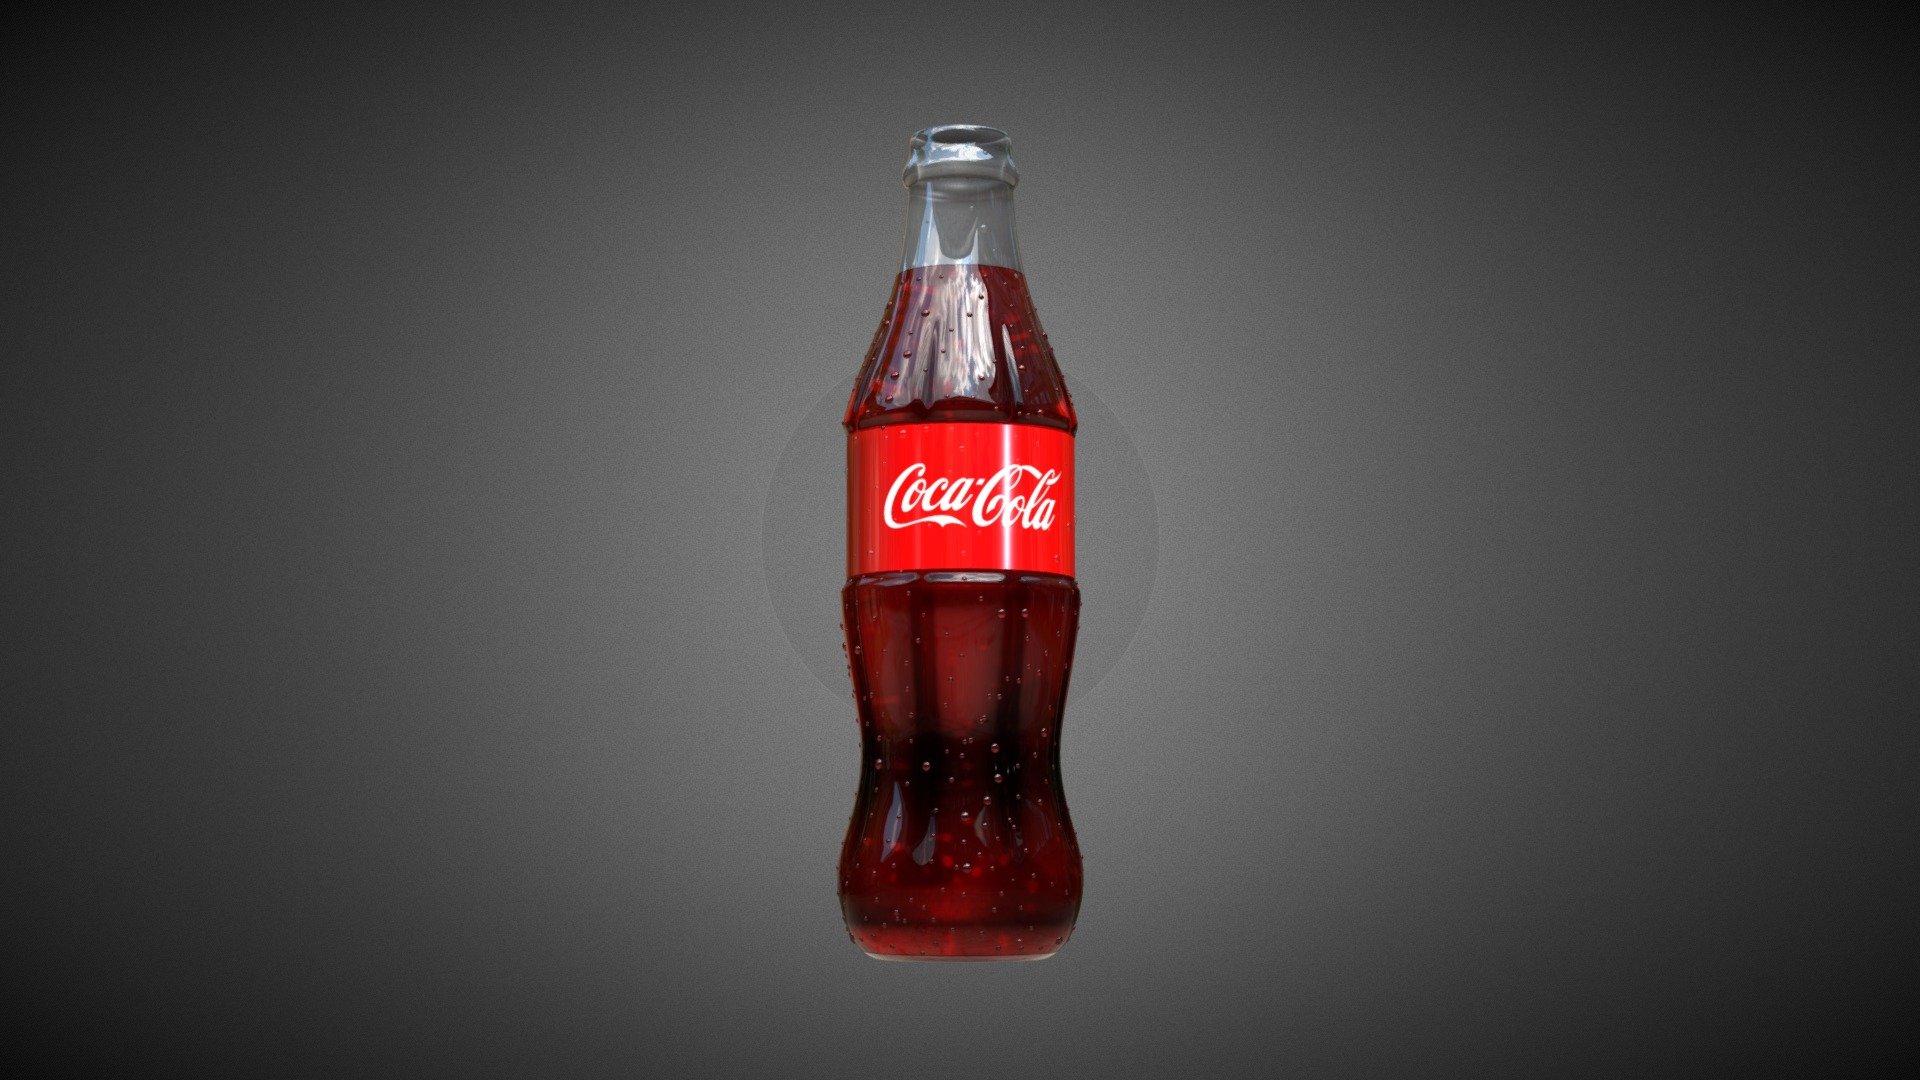 Coke testing - 3D model by NestaEric 3d model